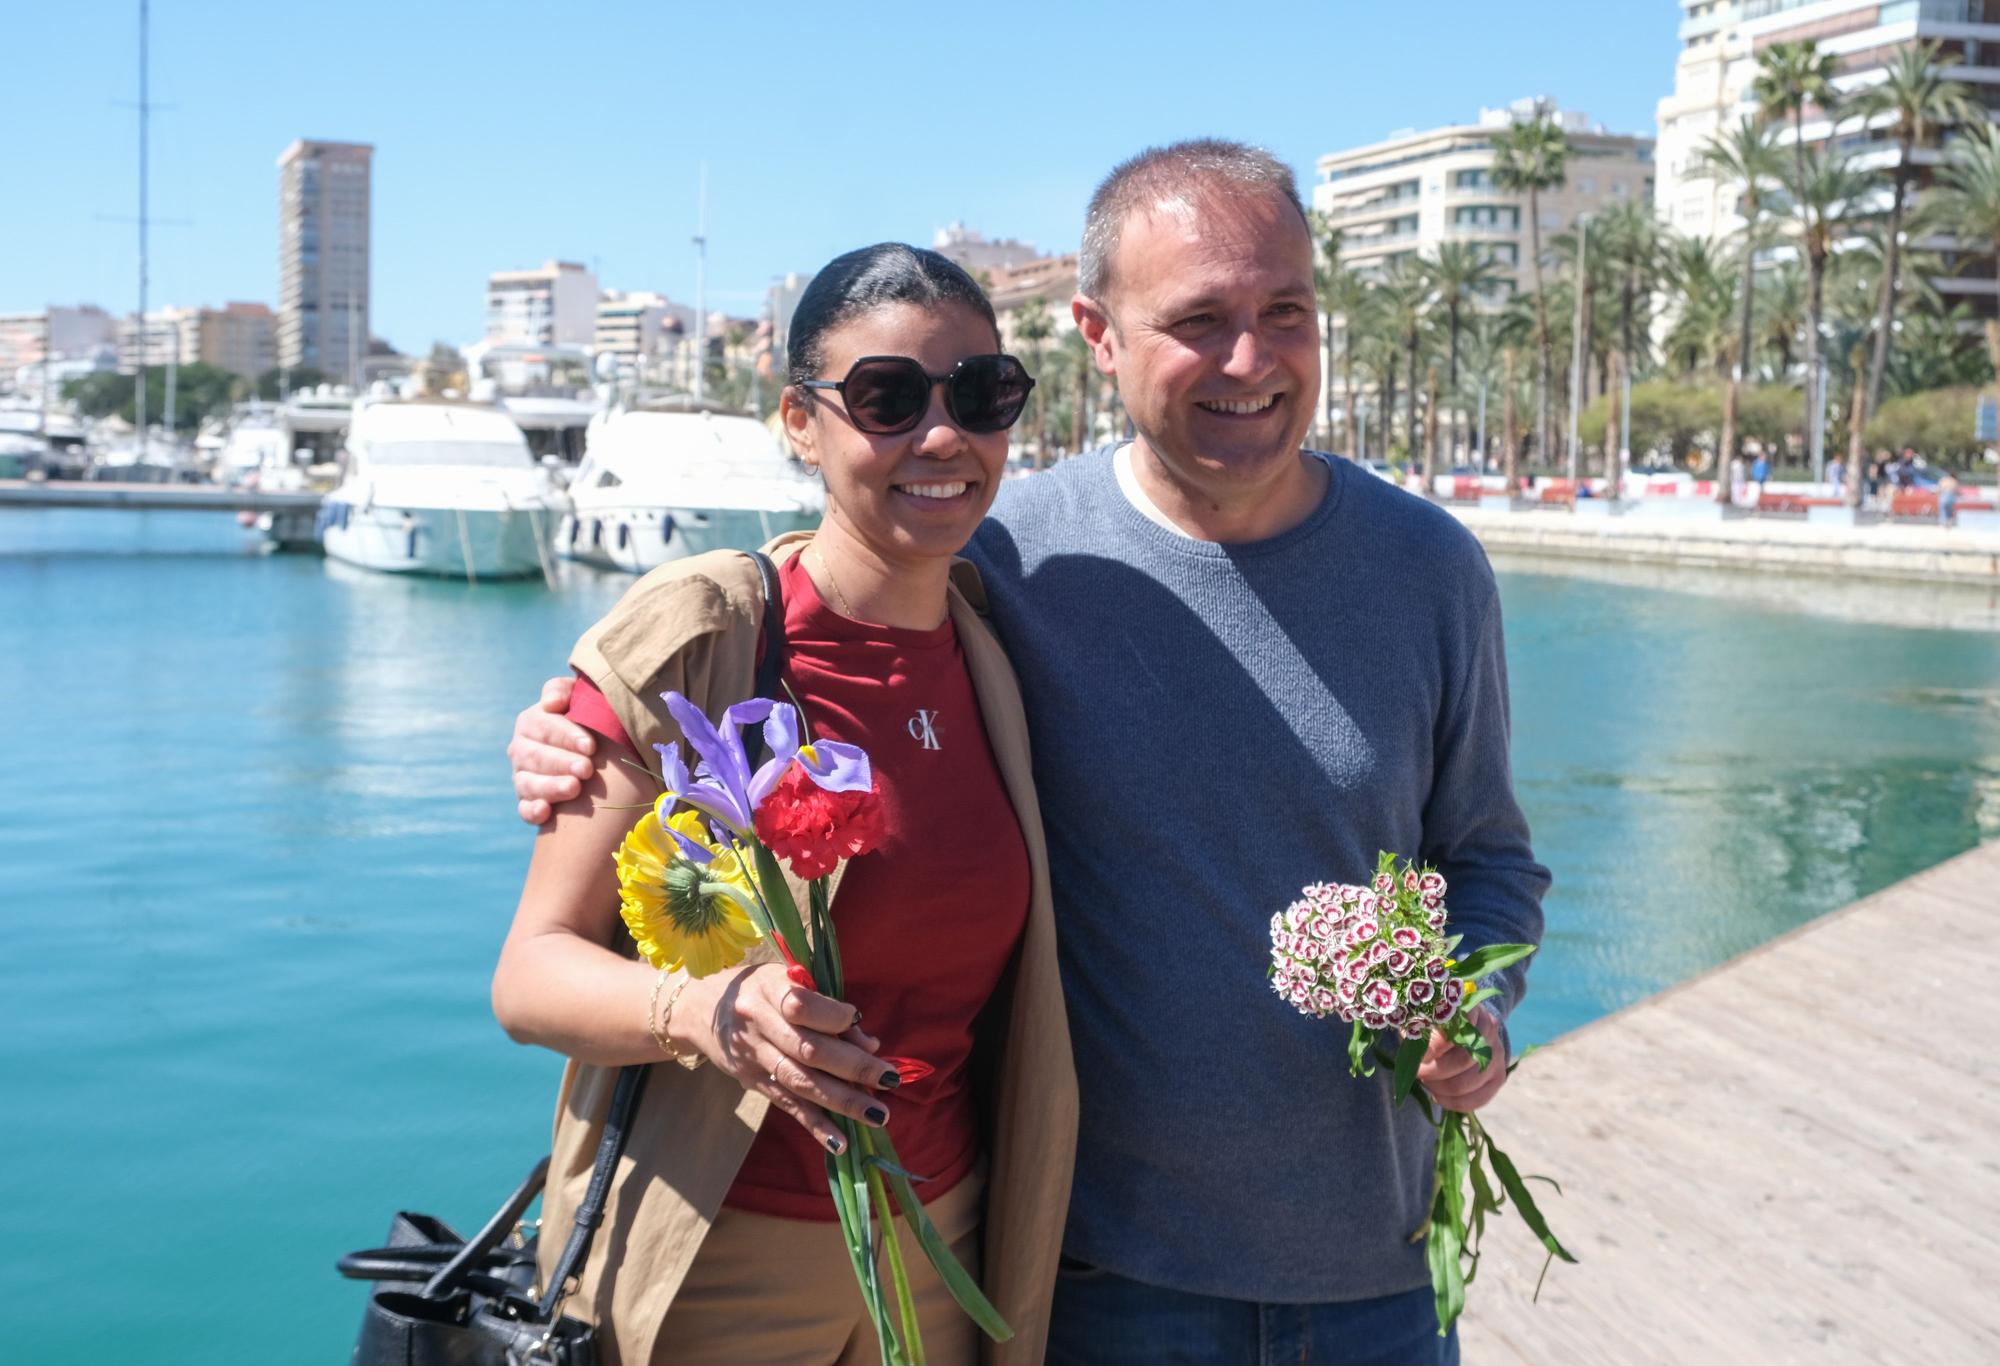 Homenaje a los exiliados republicanos del Stanbrook en el Puerto de Alicante